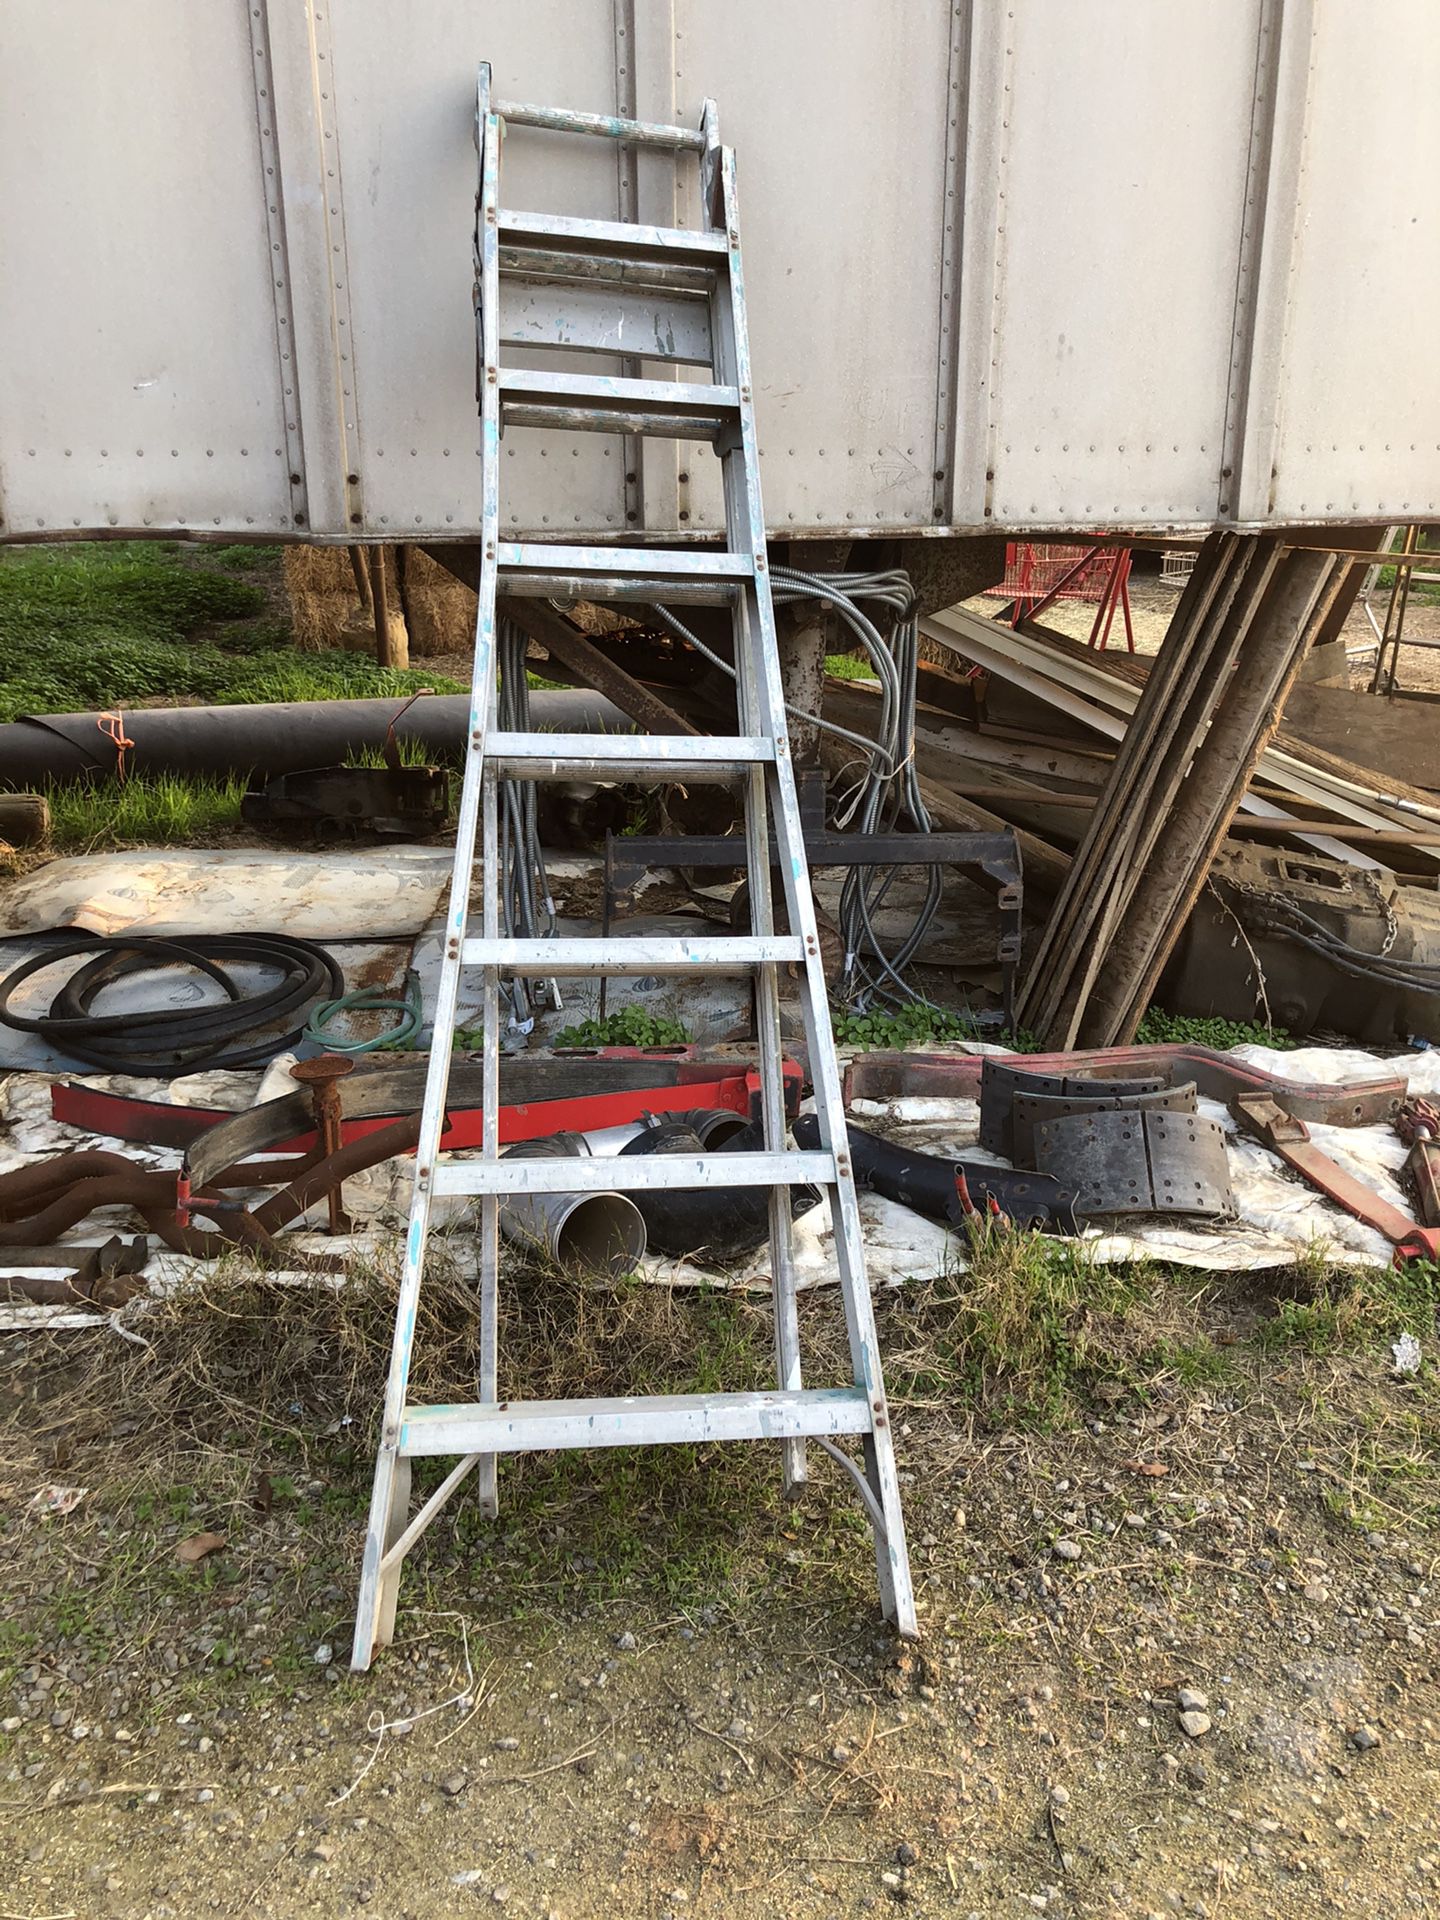 Ladder$25or best offer